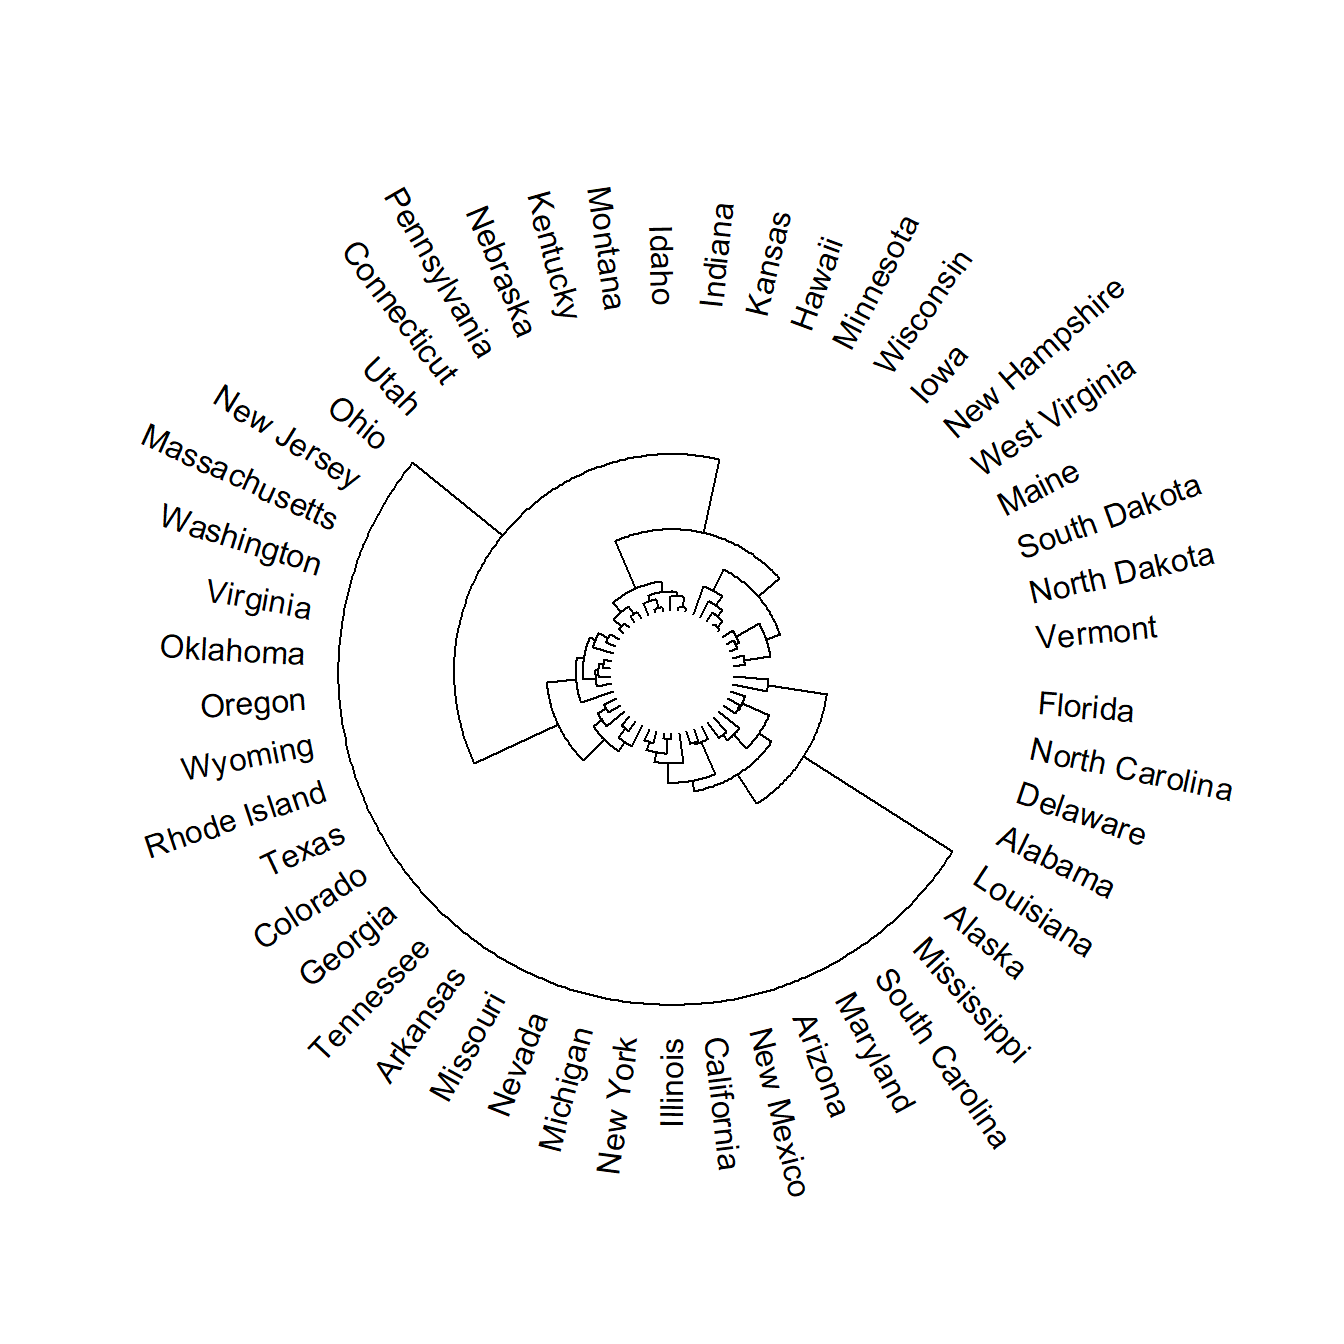 Fan tree plot in R